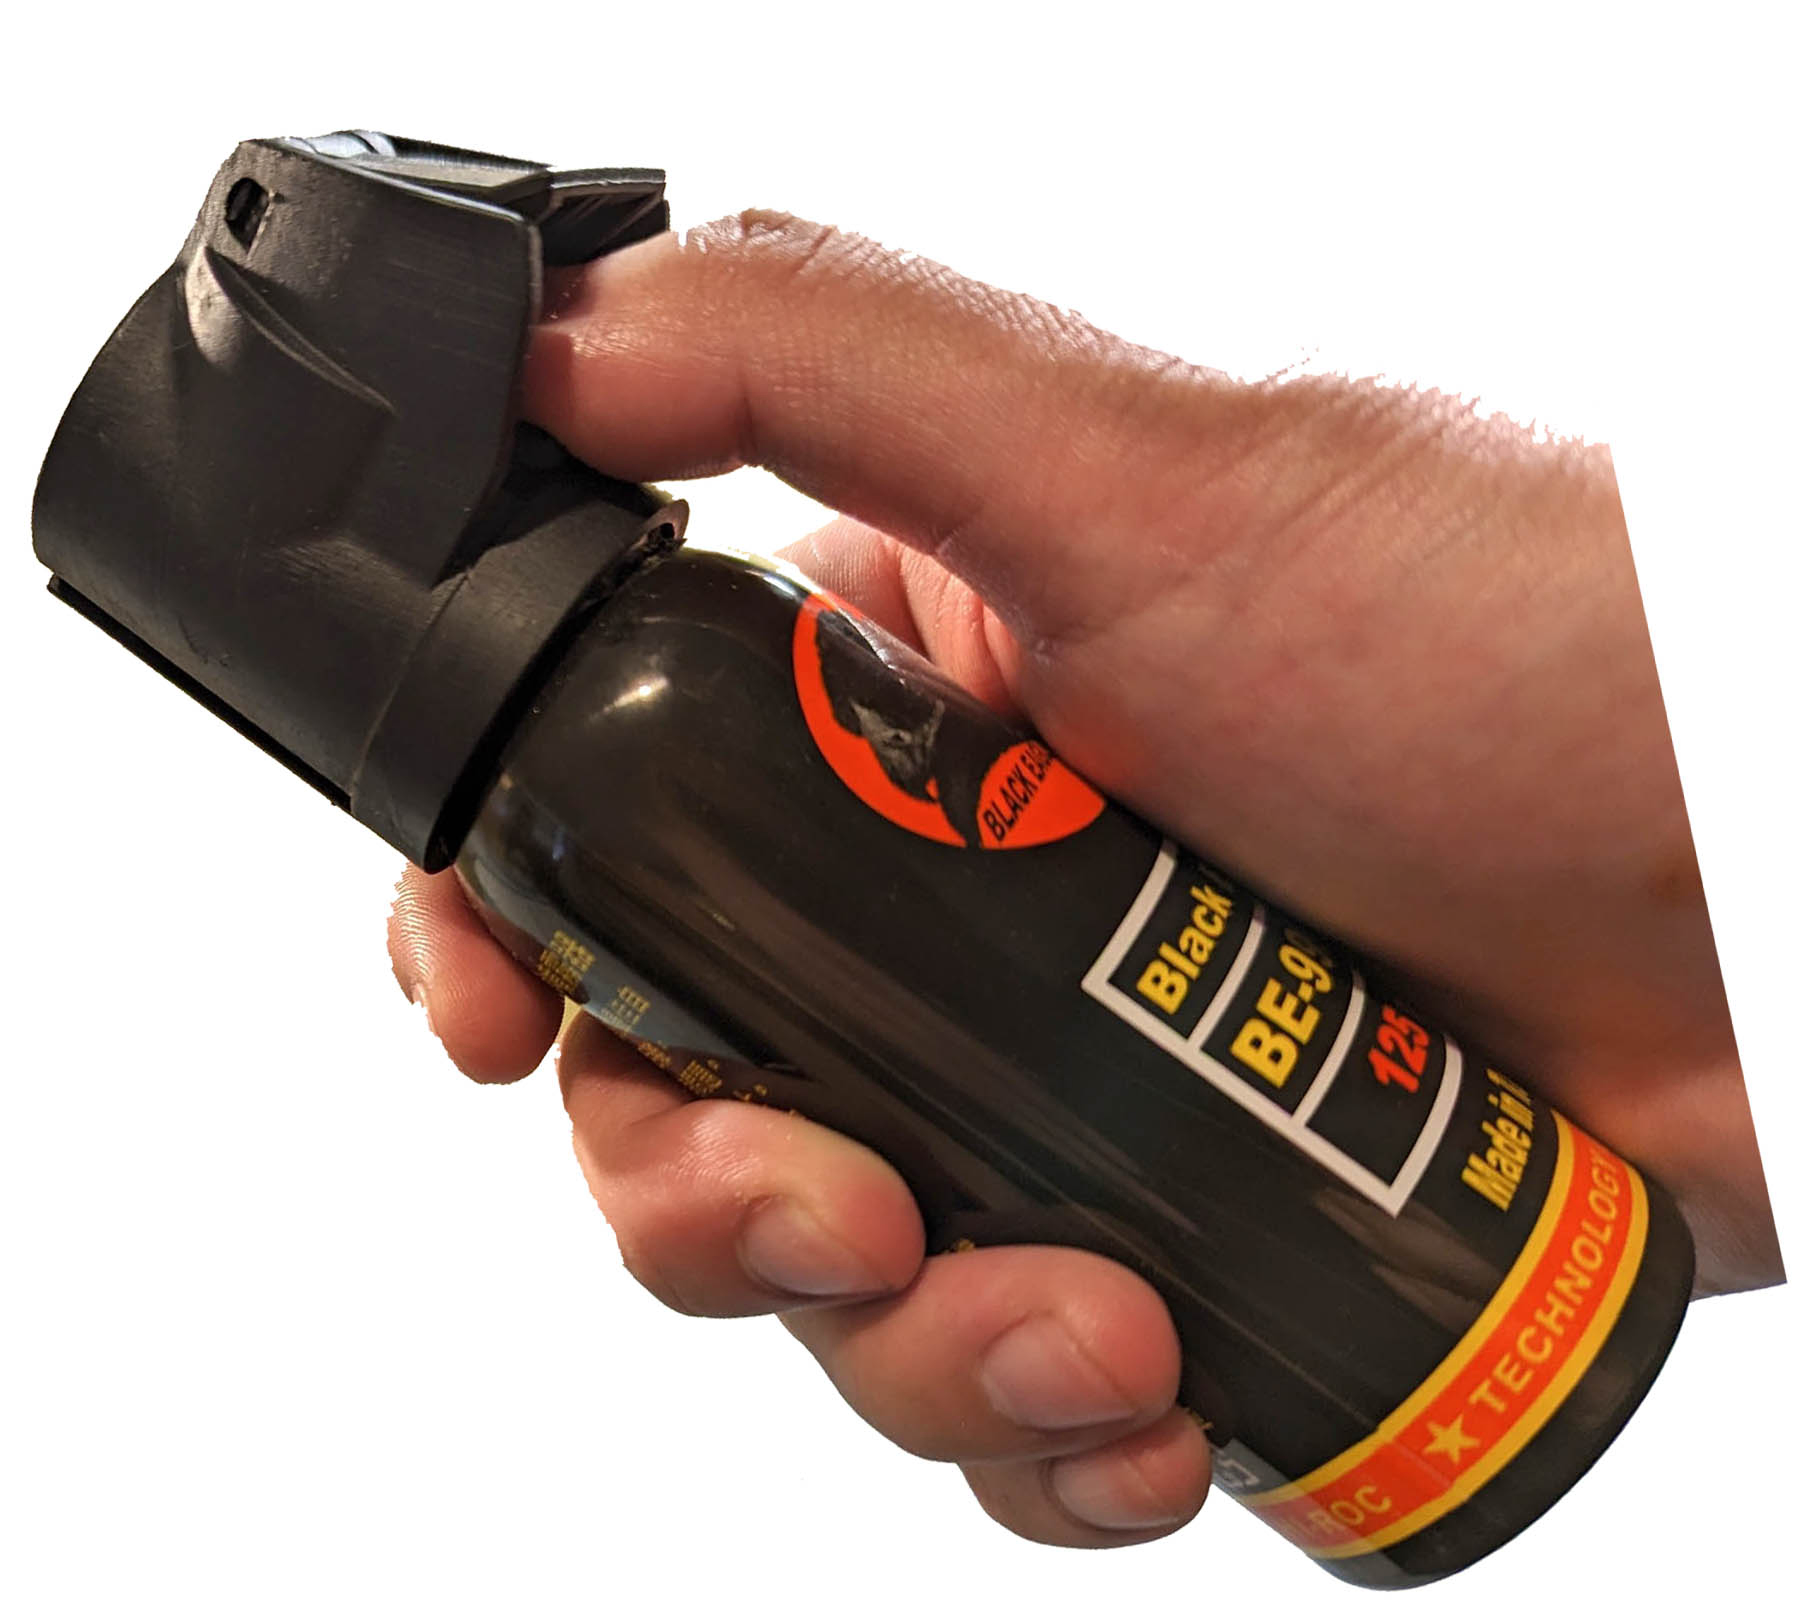 黑鷹-直射式雷射瞄準辣椒水噴霧器(水柱型)